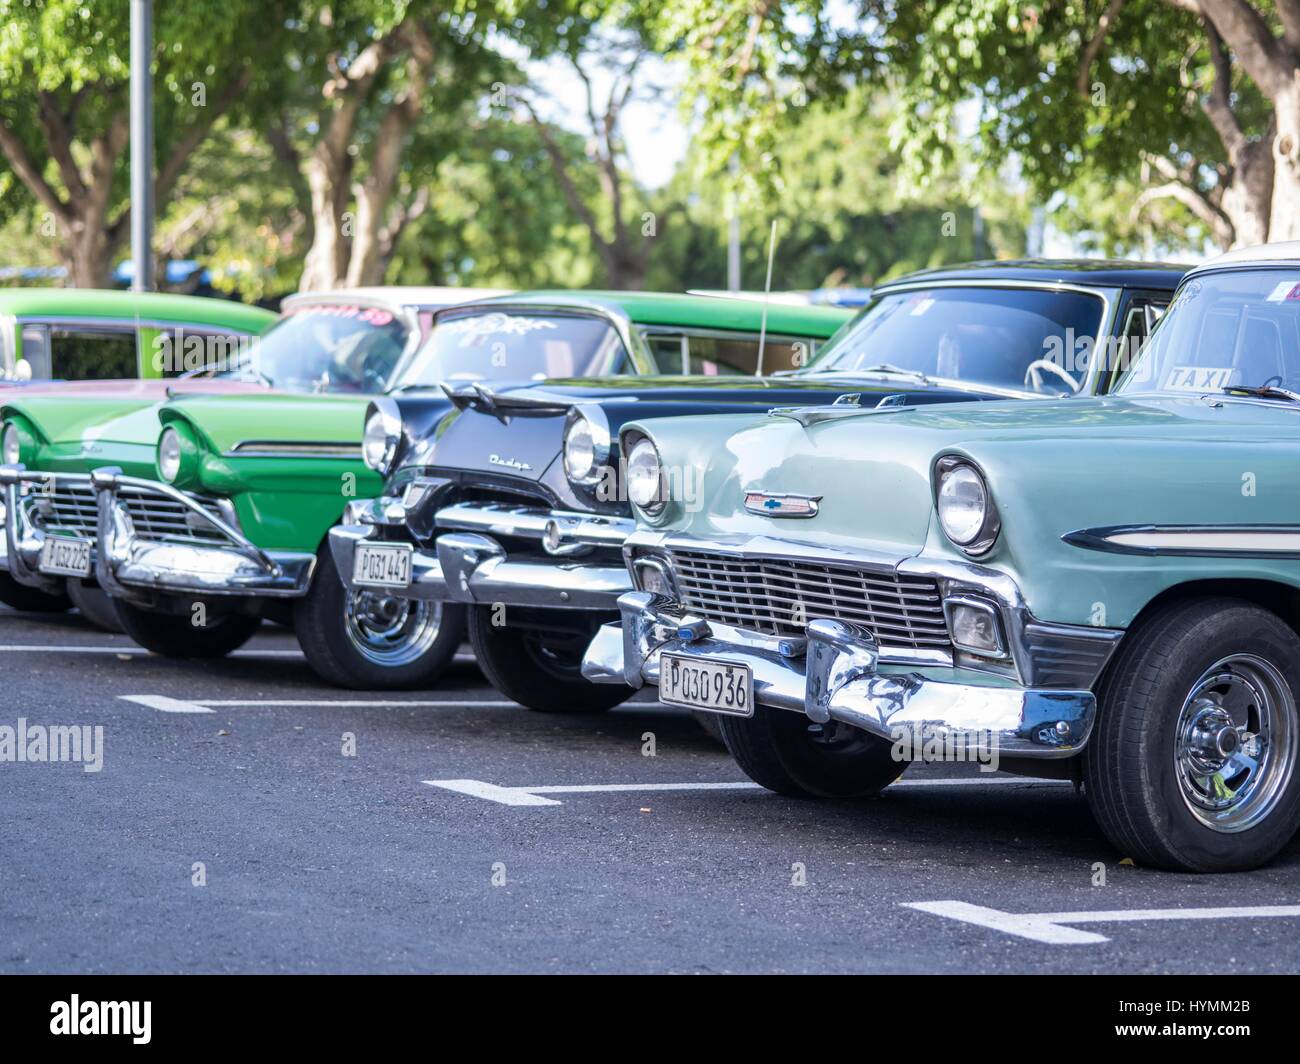 Scena di strada di l'Avana vecchia con degli anni cinquanta classic American Cars, Centro de L Avana Vecchia Havana, Cuba Foto Stock